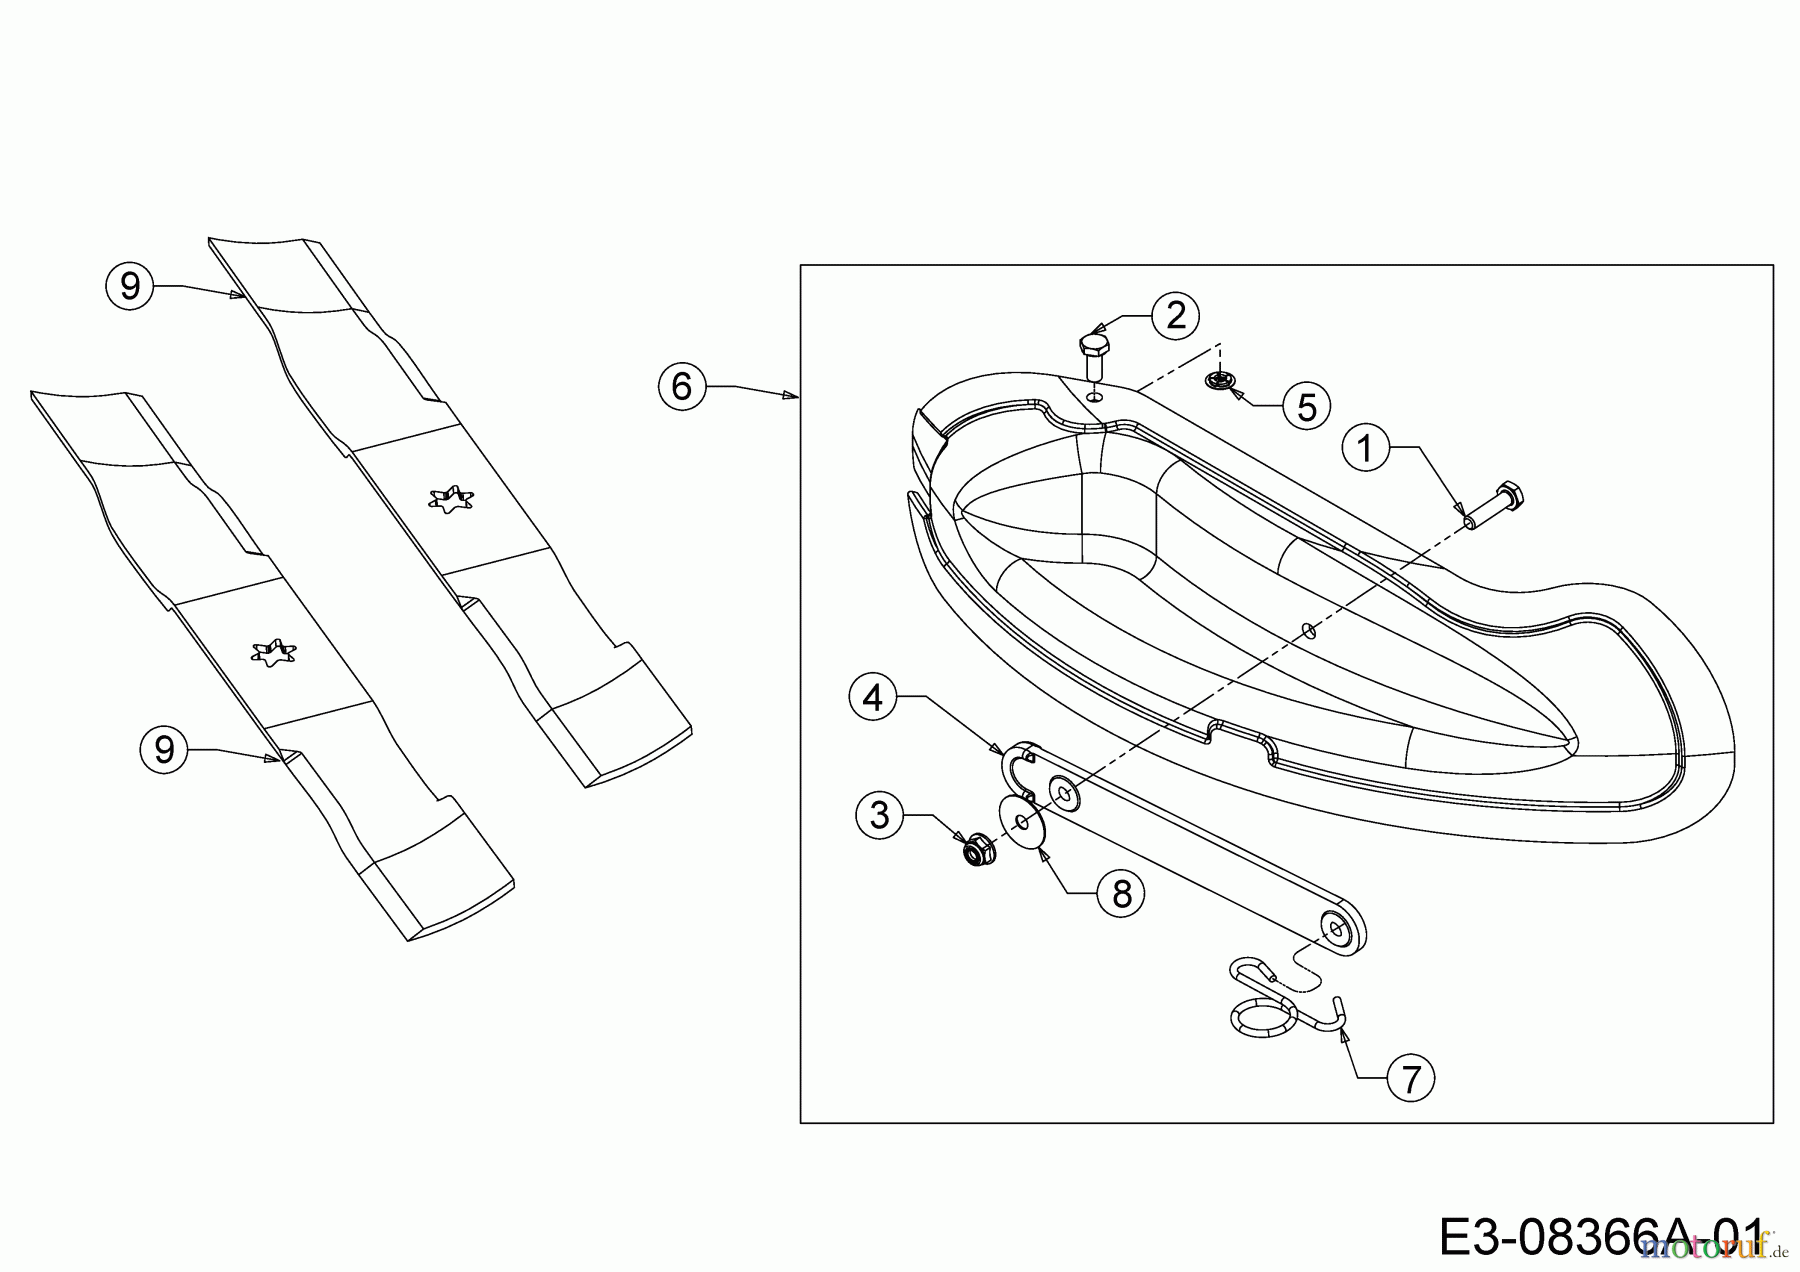  MTD Zubehör Zubehör Garten- und Rasentraktoren Mulch Kits für 900 Serie (NX-09) mit Mähwerk T (46